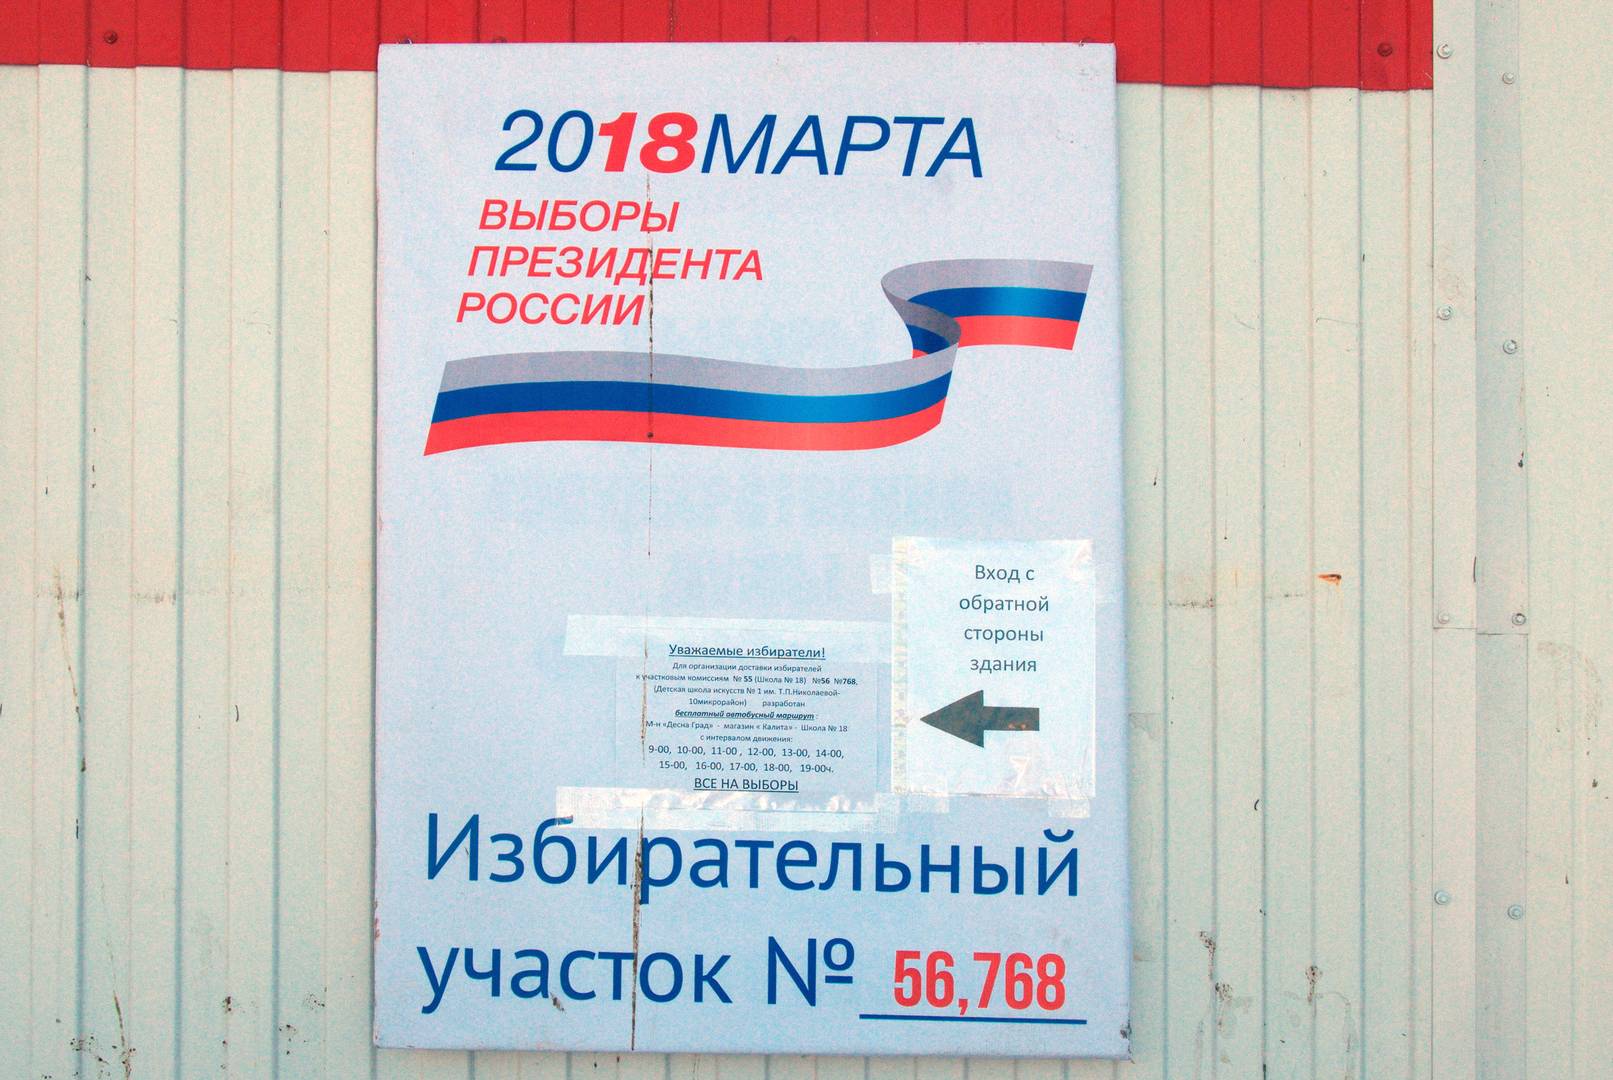 г. Брянск, объявление о бесплатном автобусе на избирательном участке № 768 © ИА Красная Весна 